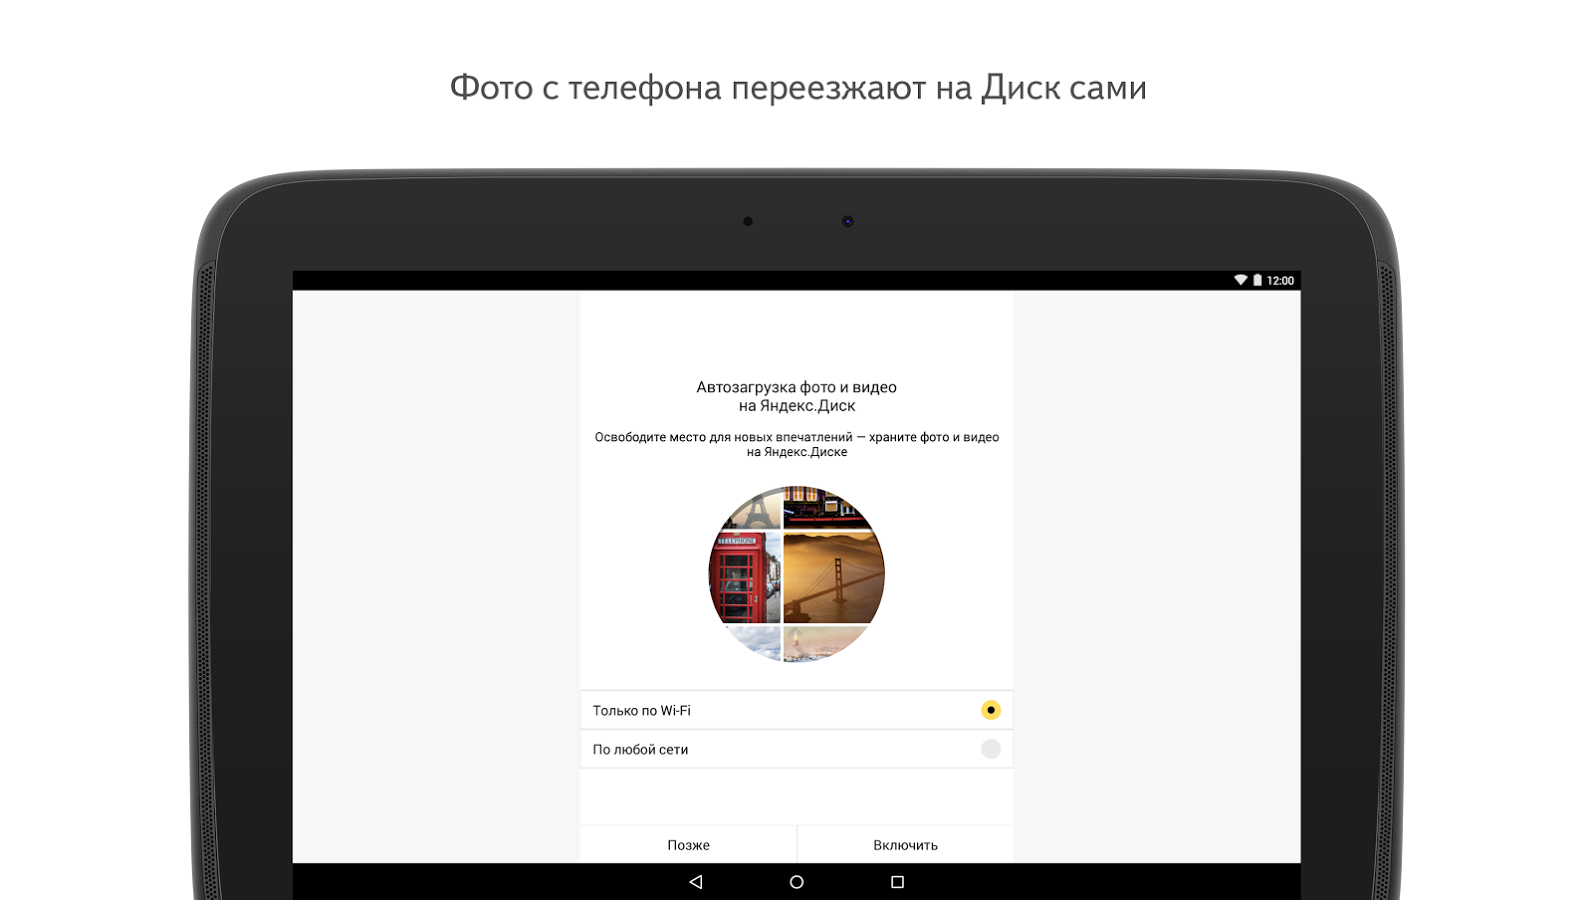 Яндекс Диск Фото И Видео